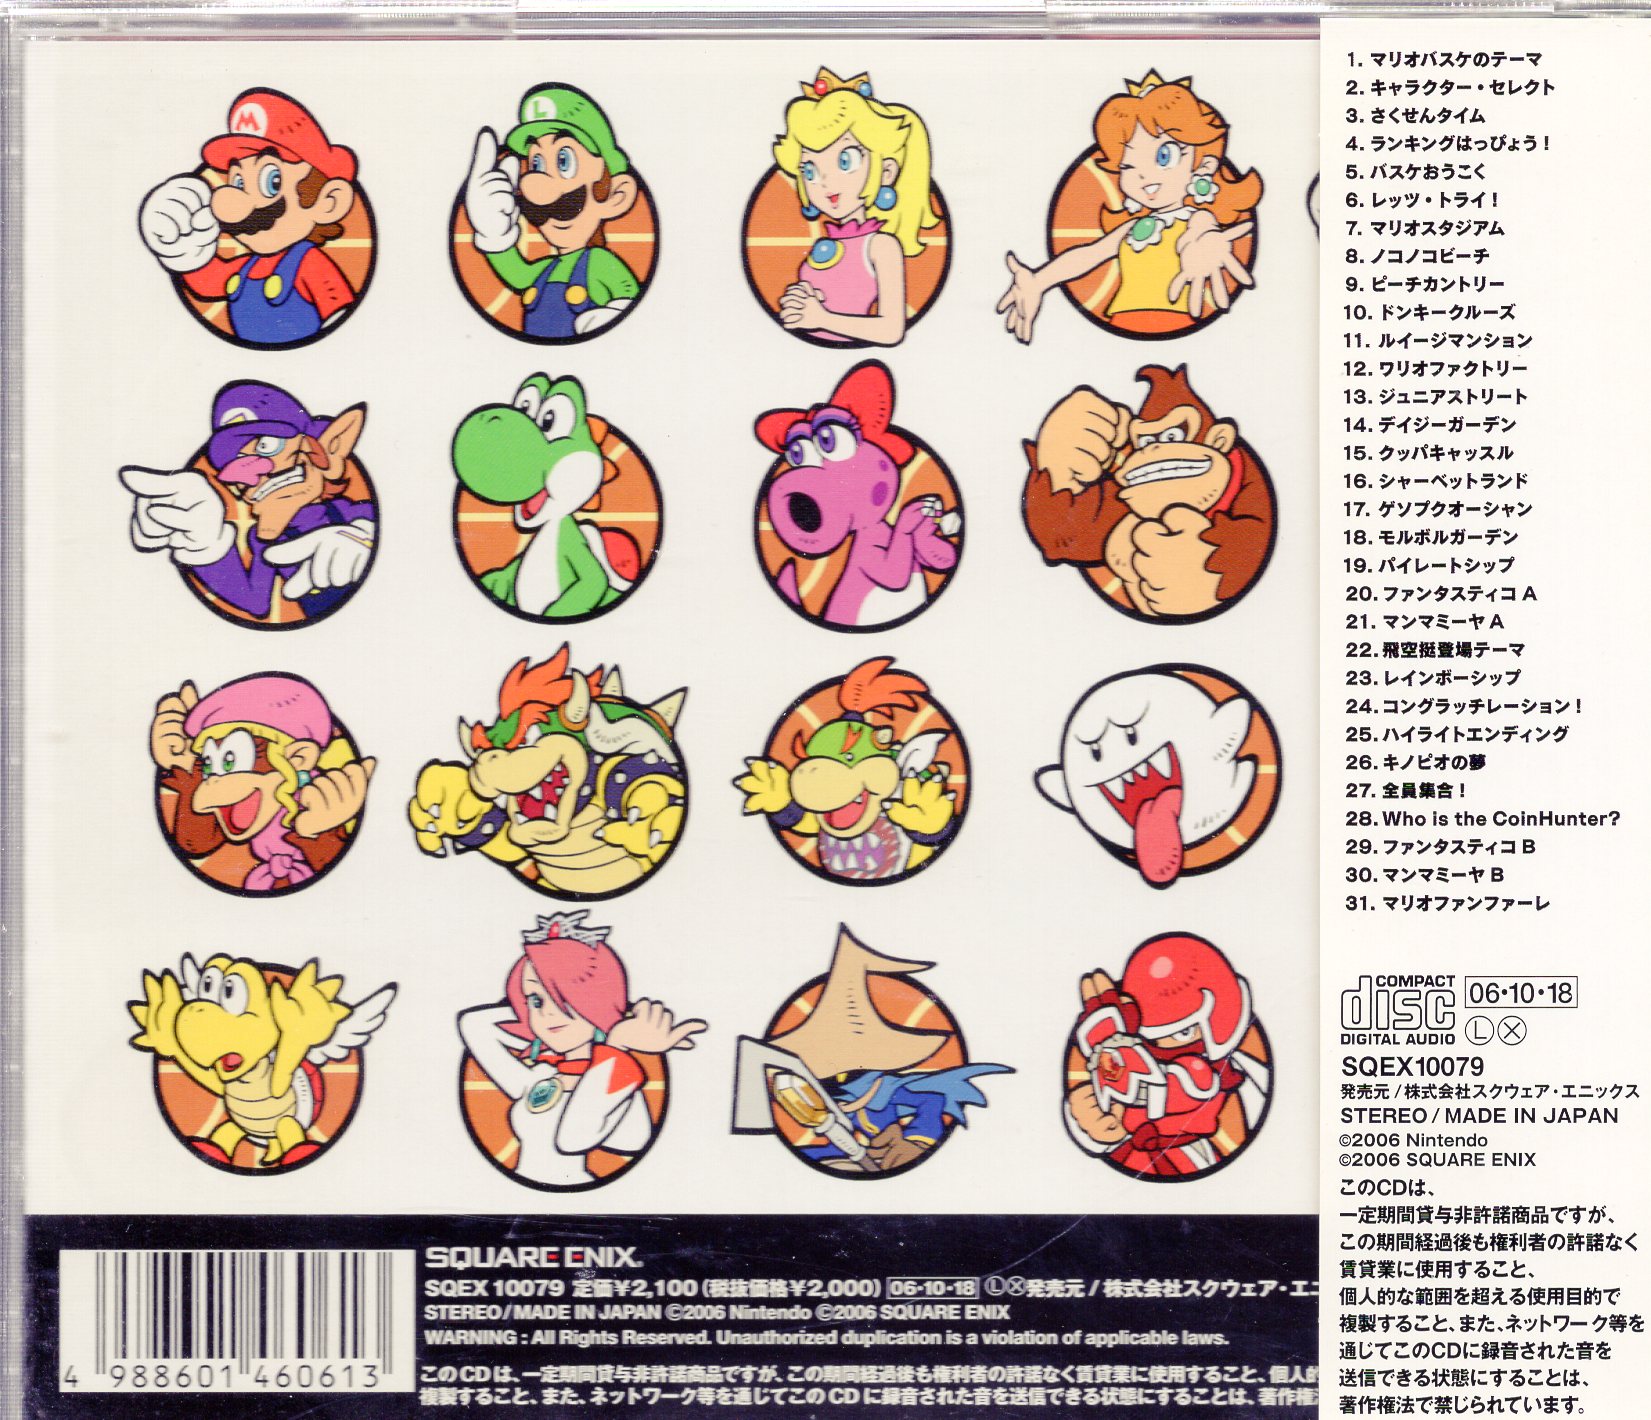 ゲームCD マリオバスケ 3on3 オリジナルサウンドトラック